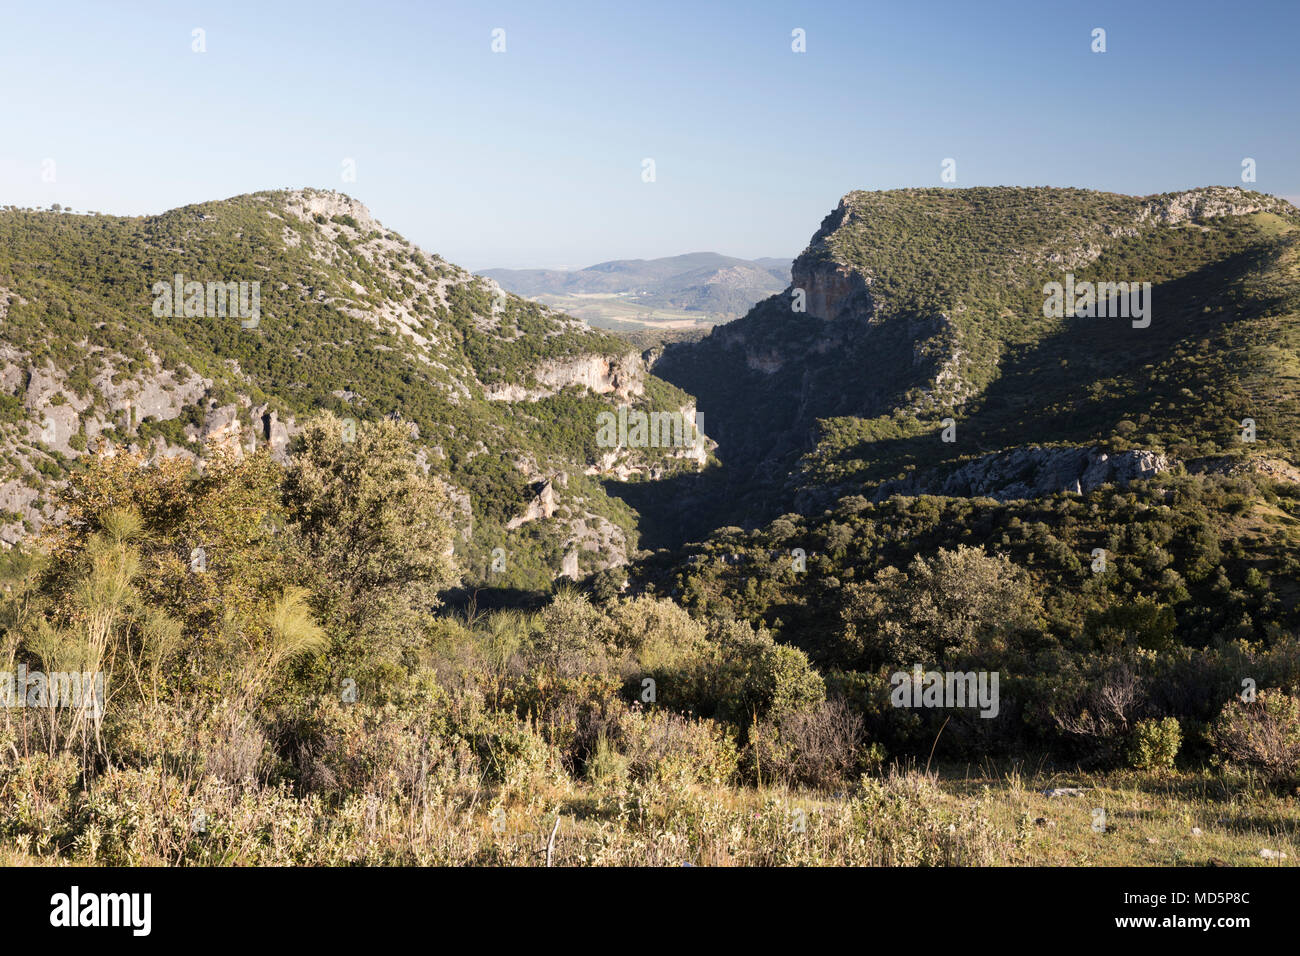 View of the Garganta Verde Green Gorge from the Mirador Puerto de los Acebuches, Sierra de Grazalema Natural Park, Andalucia, Spain, Europe Stock Photo